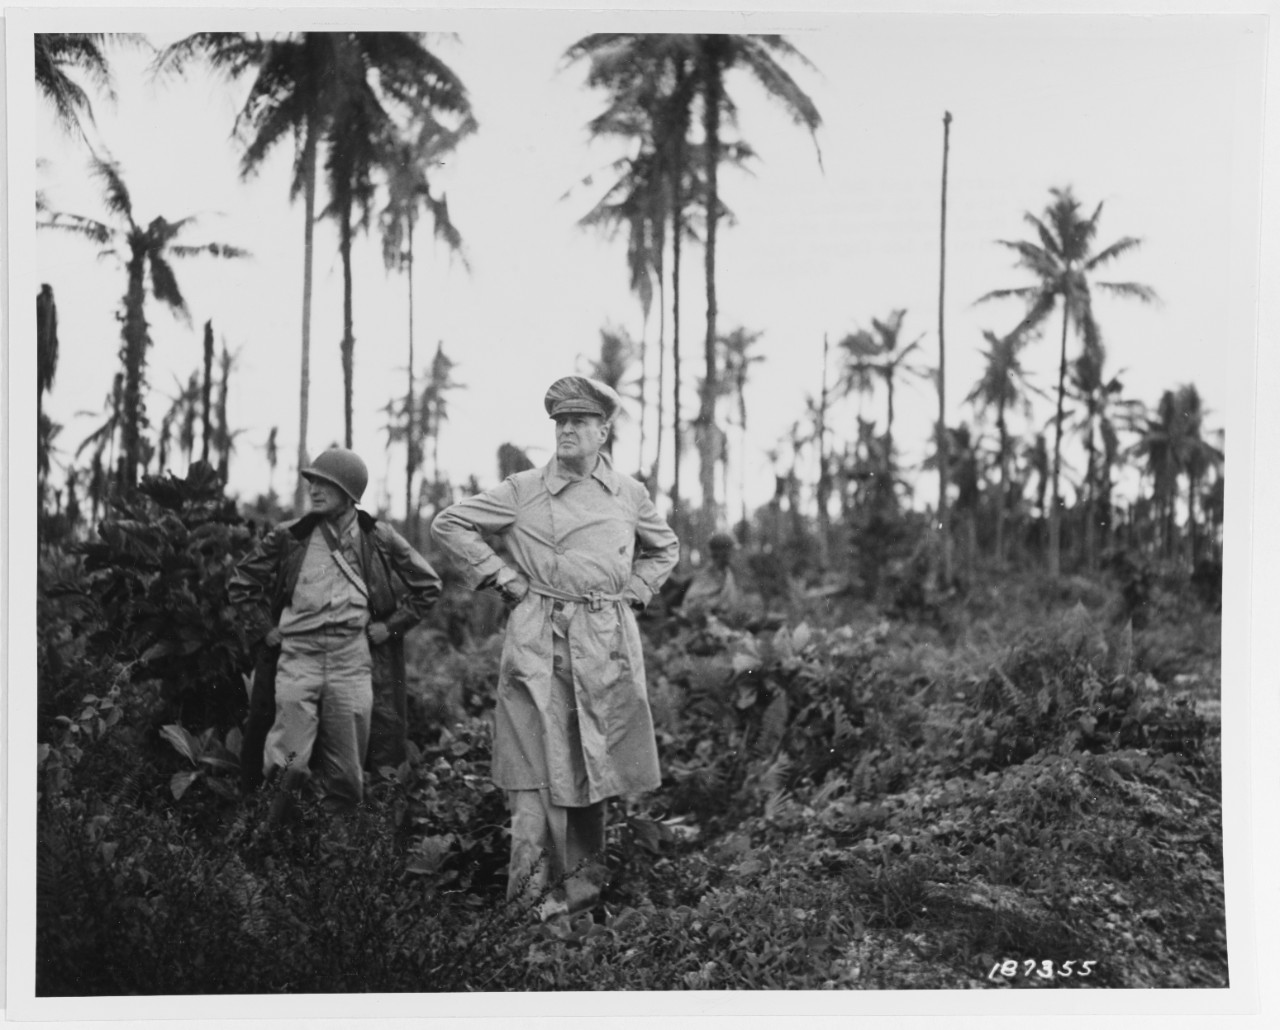 Photo #: SC 187355  General Douglas MacArthur, Supreme Commander, Allied Forces, Southwest Pacific Area (center)  